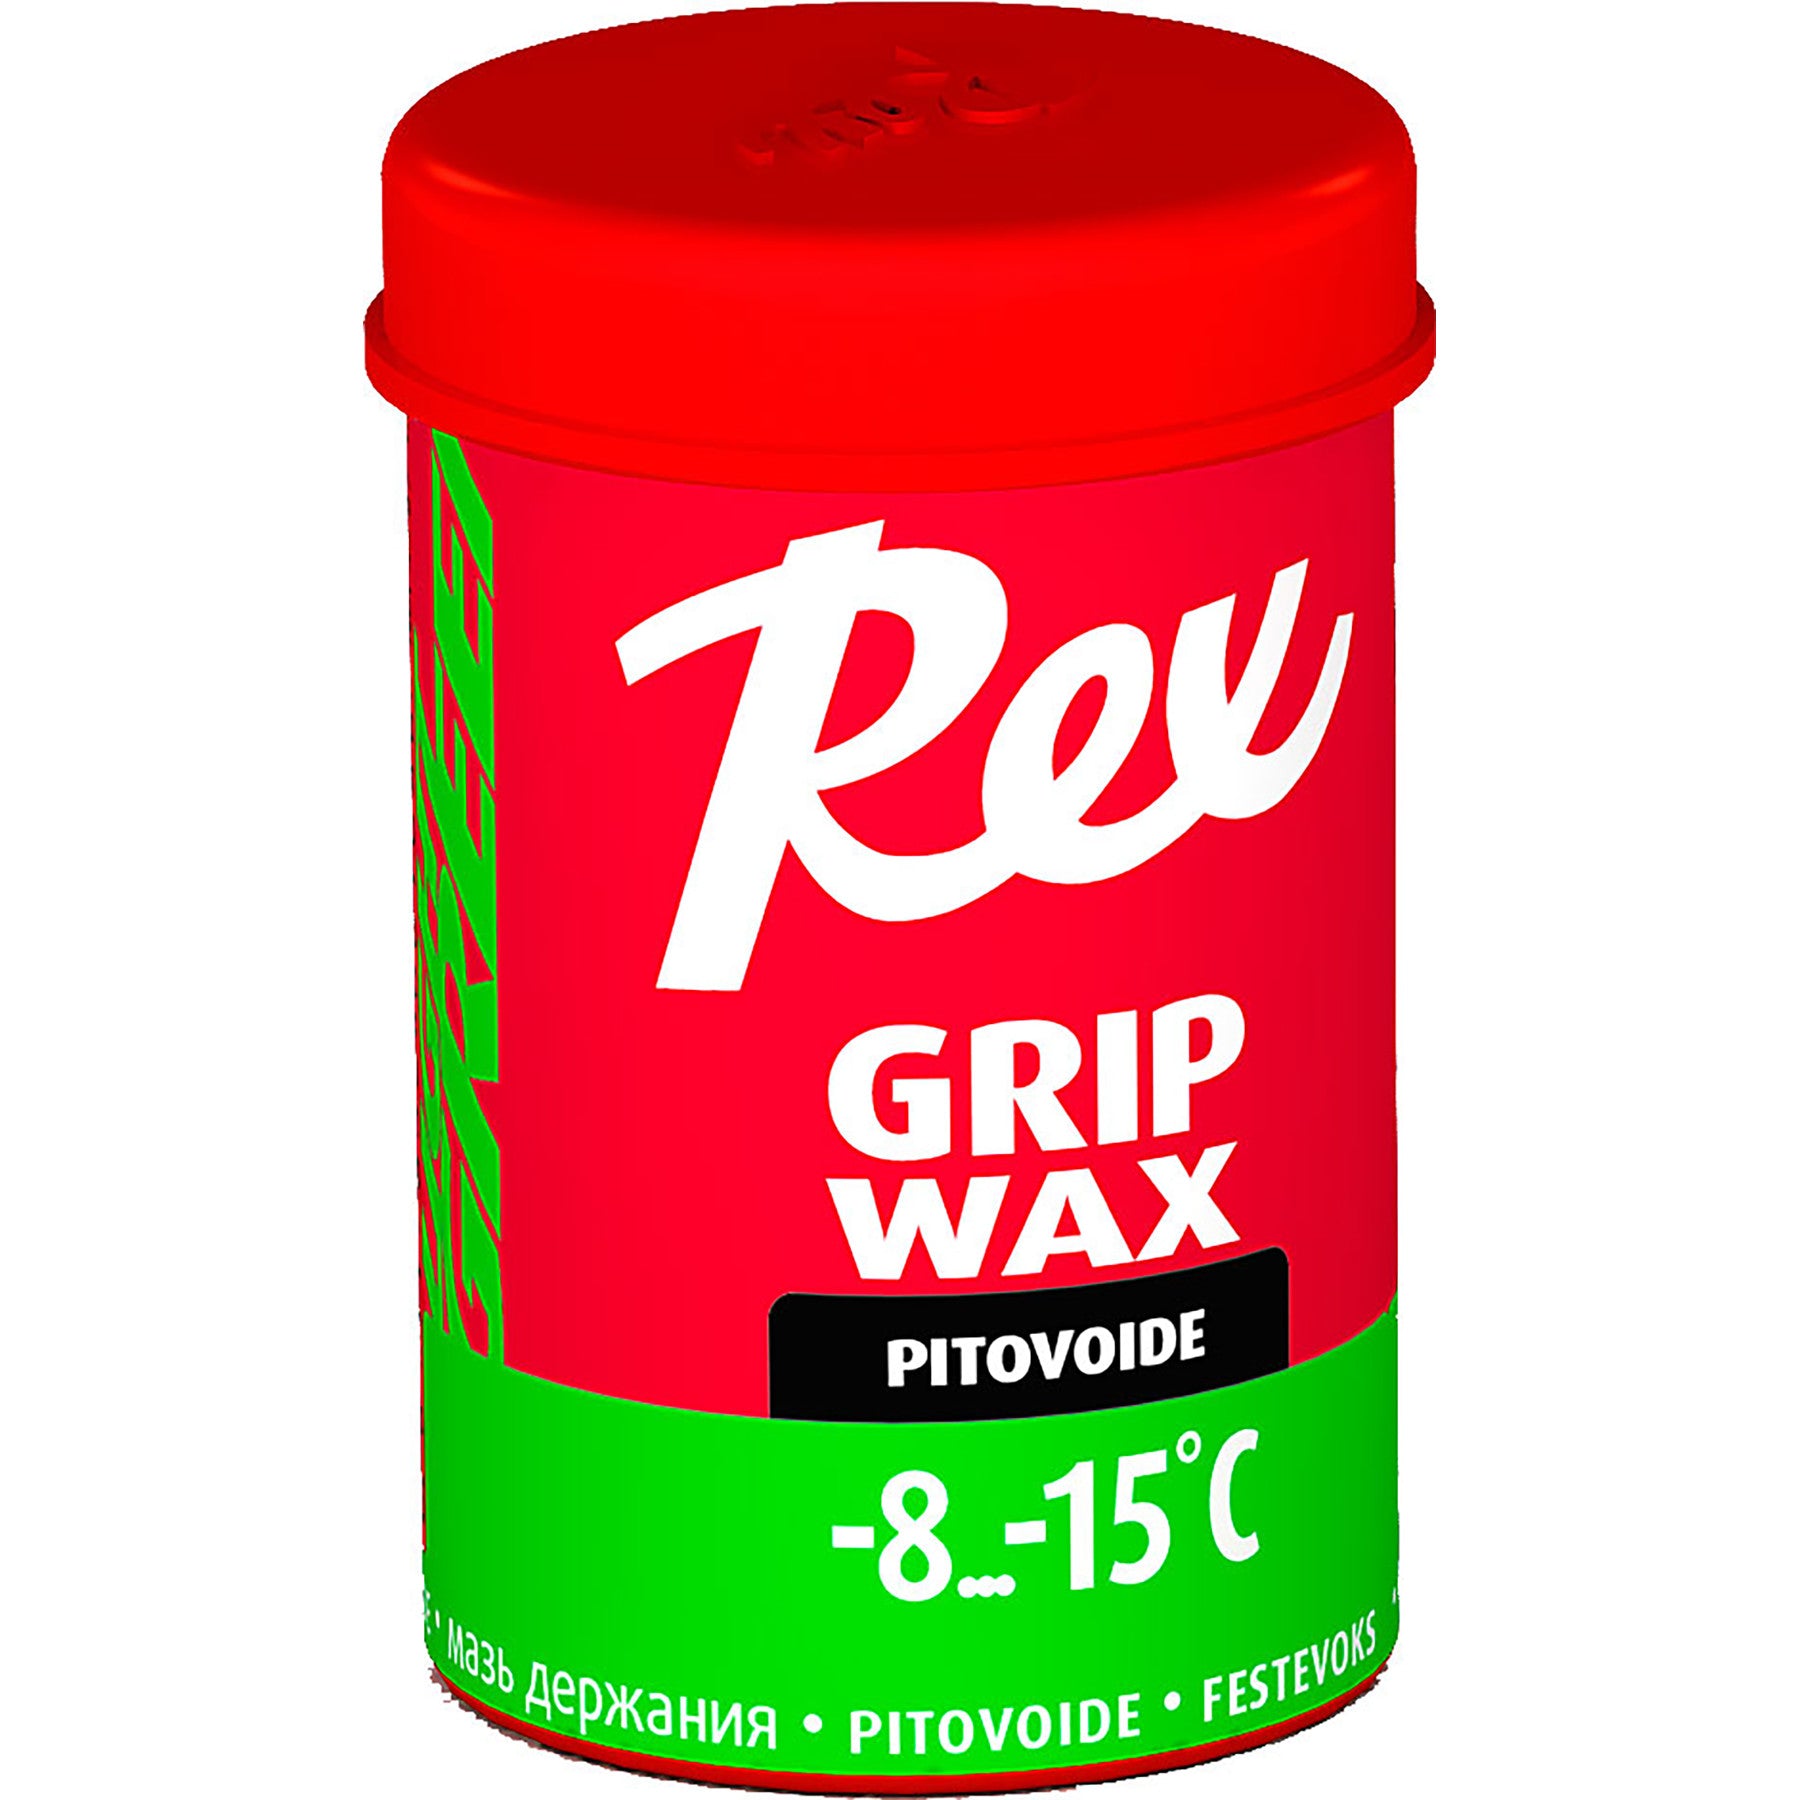 Rex Grip Wax 45g-3